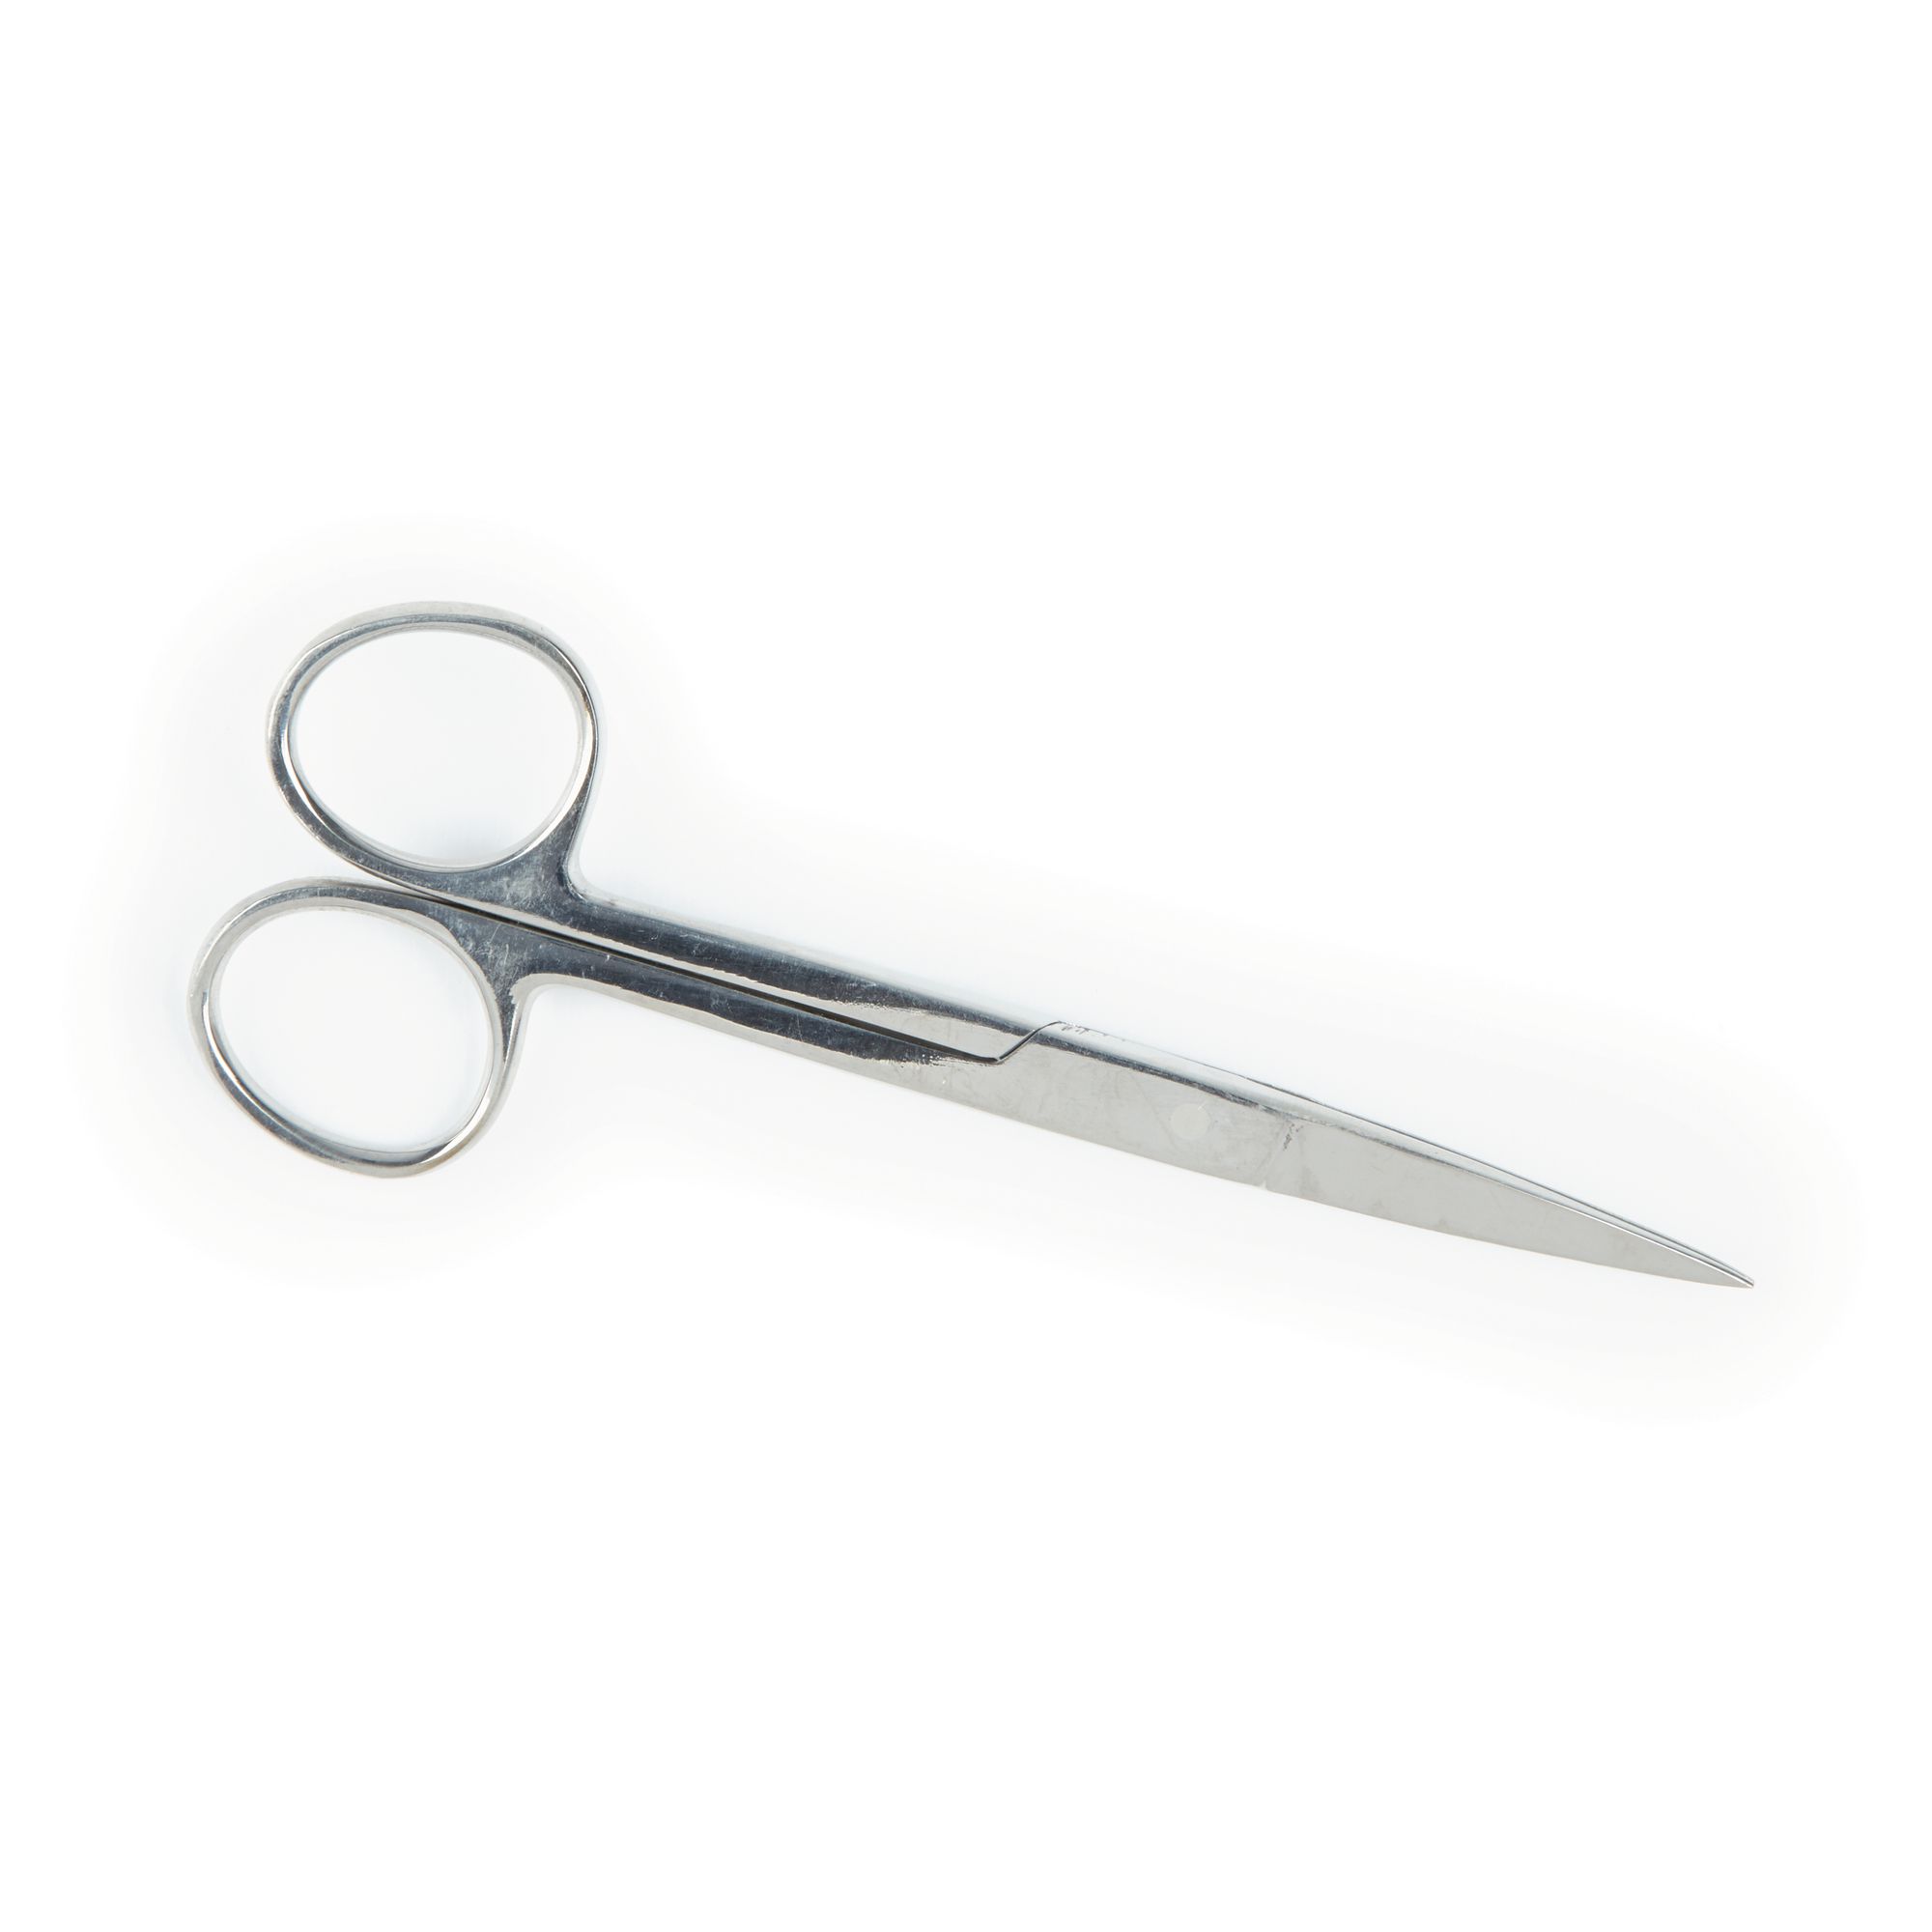 sharp scissors